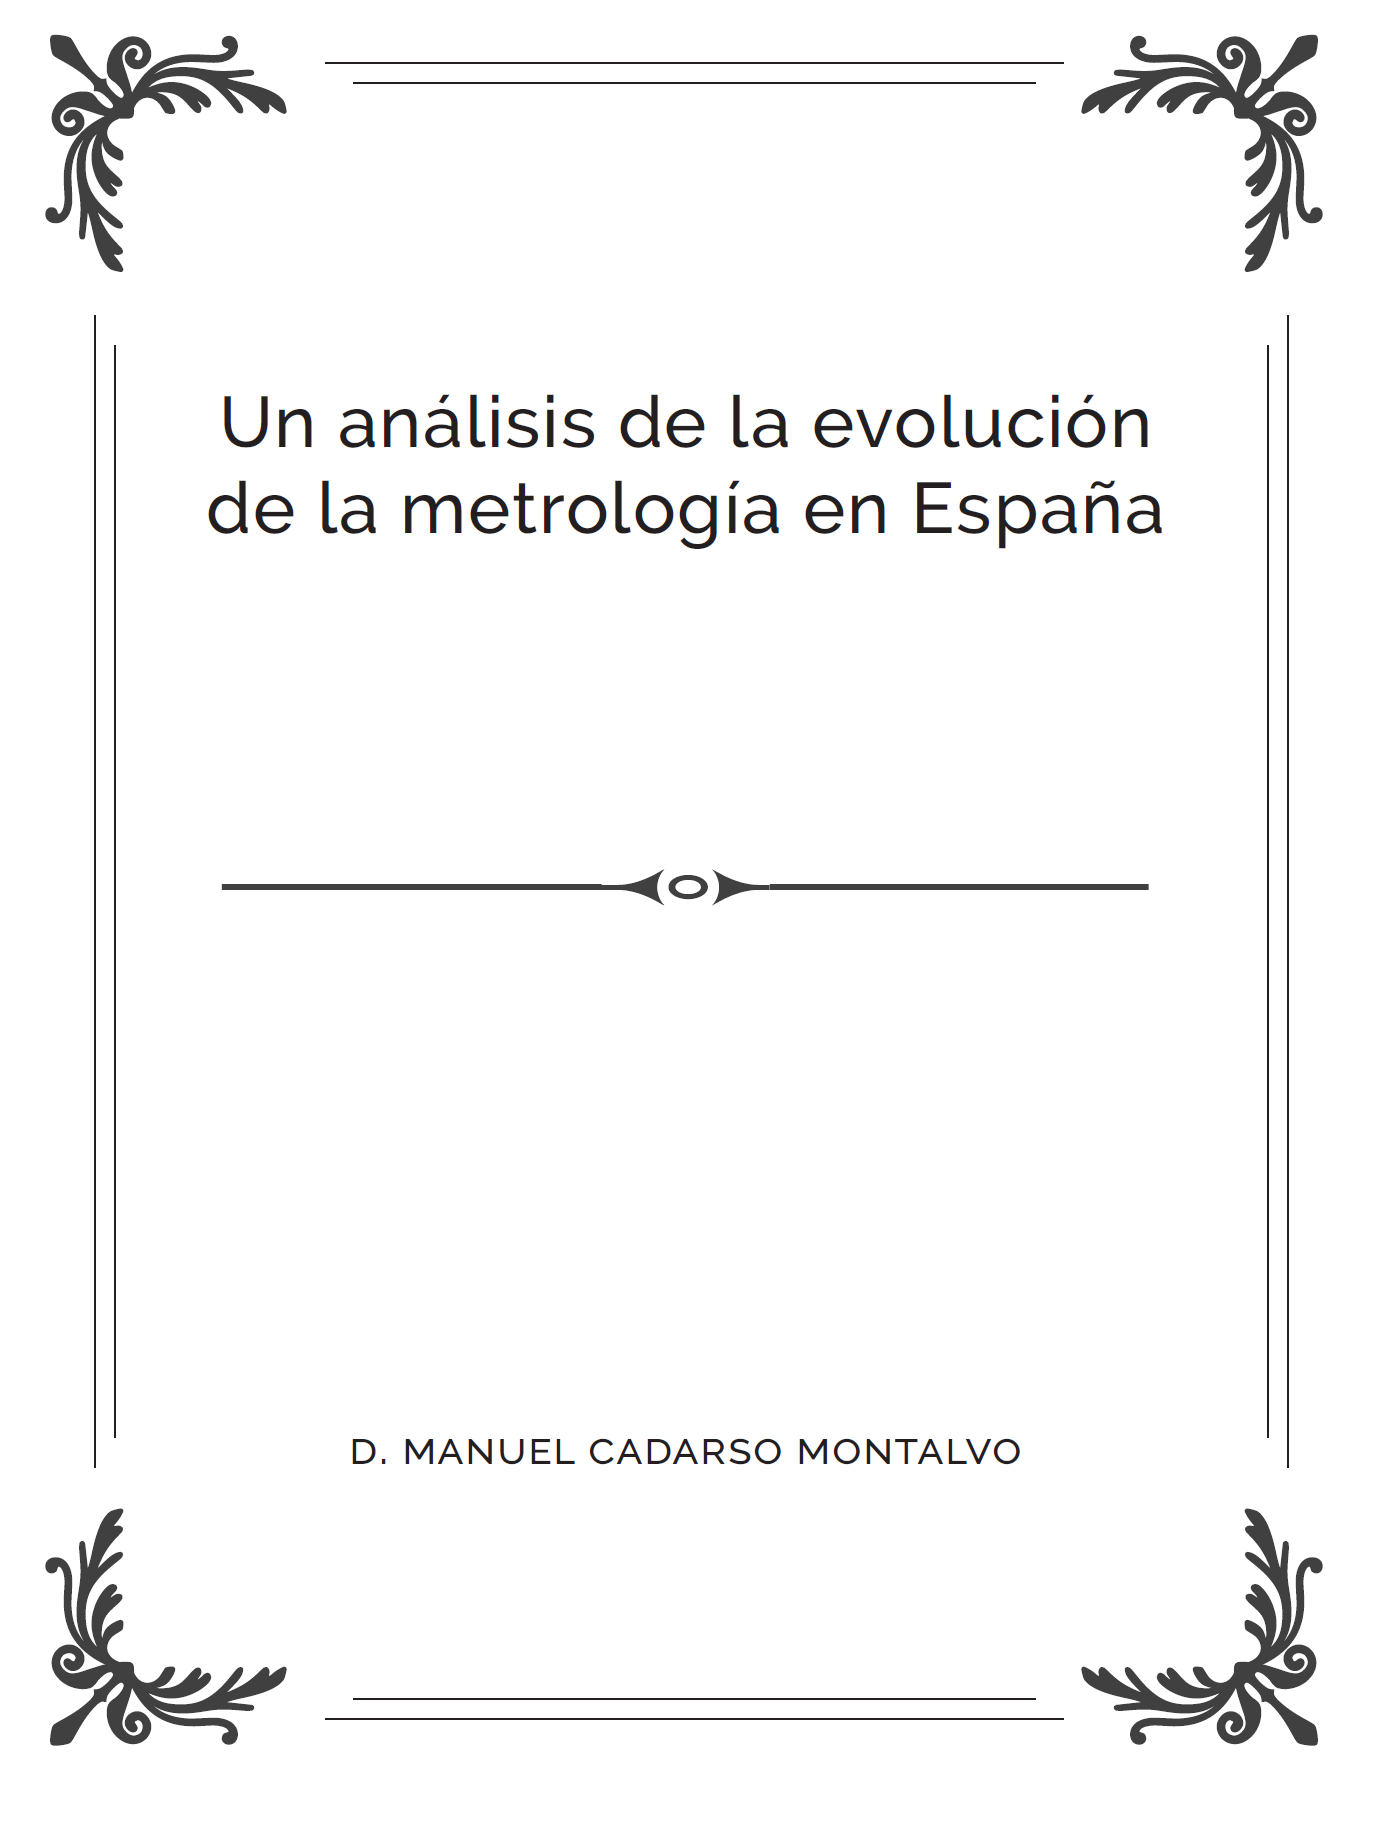 Evolución de la metrología en España